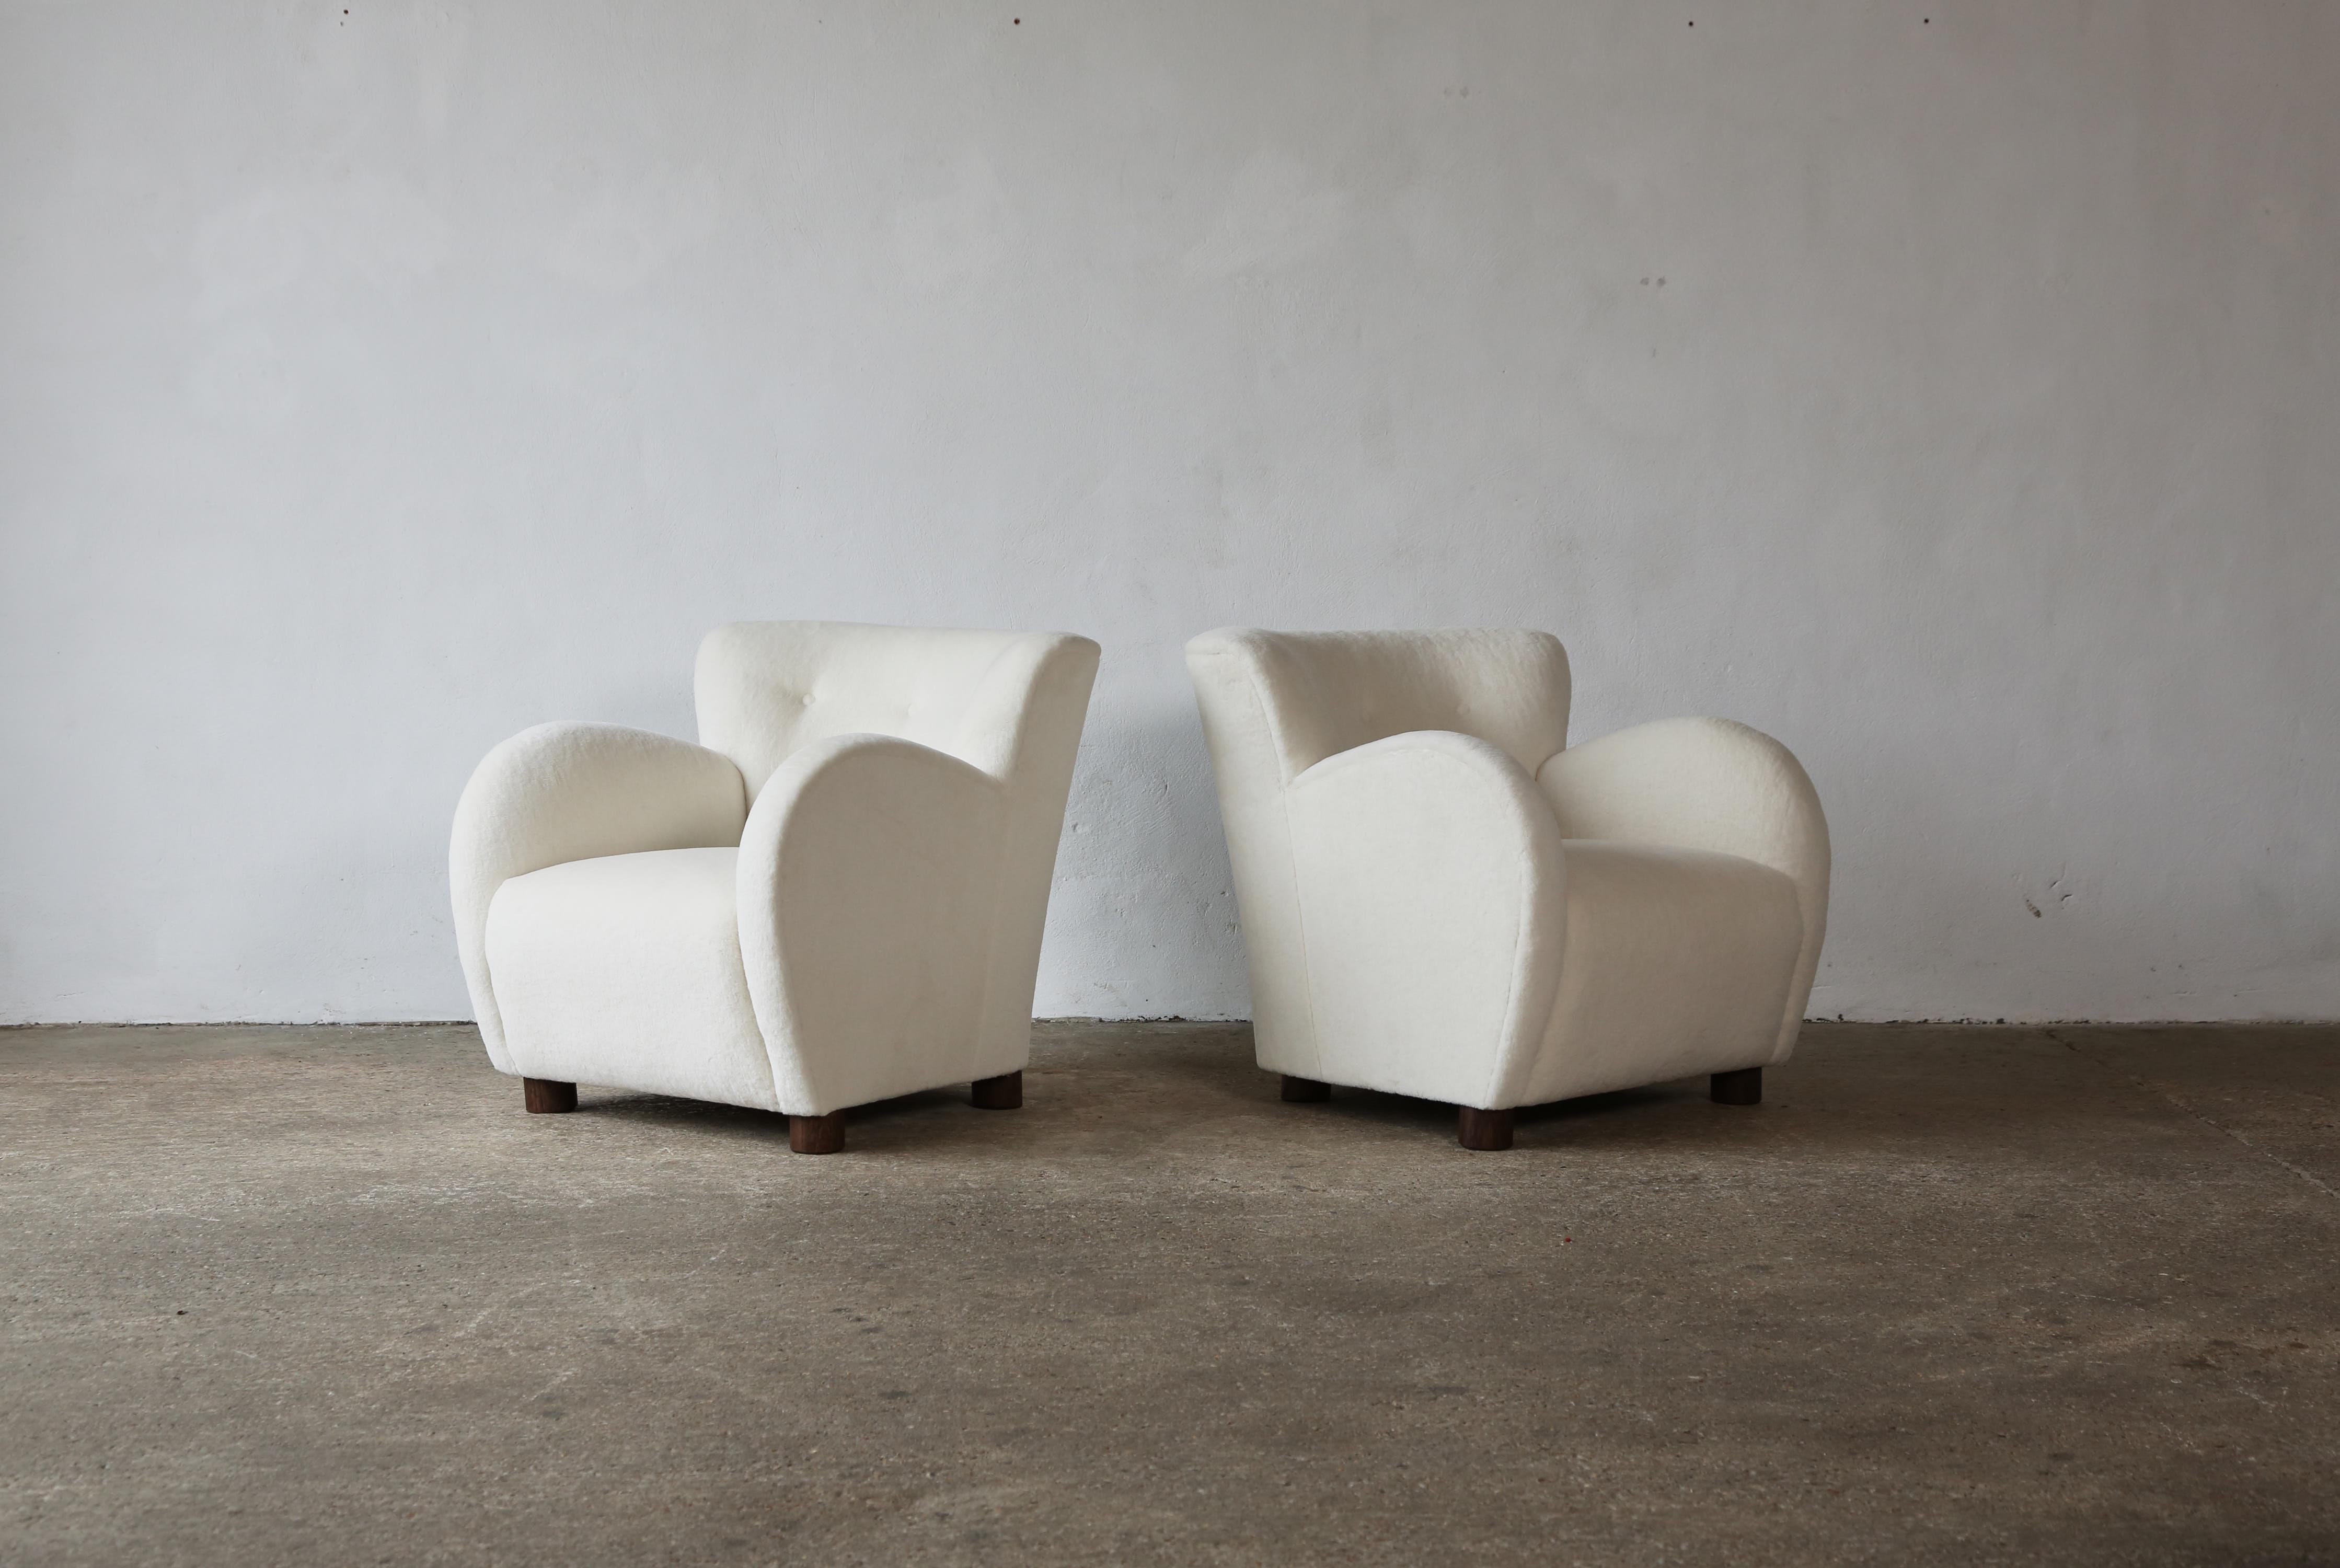 Ein hervorragendes Paar moderner Rundarm-Sessel im dänischen Stil. Handgefertigtes Buchengestell, gefederter Sitz und neu gepolstert mit einem hochwertigen, weichen Stoff aus reiner weißer Alpakawolle und massiven Eichenfüßen. Schneller Versand